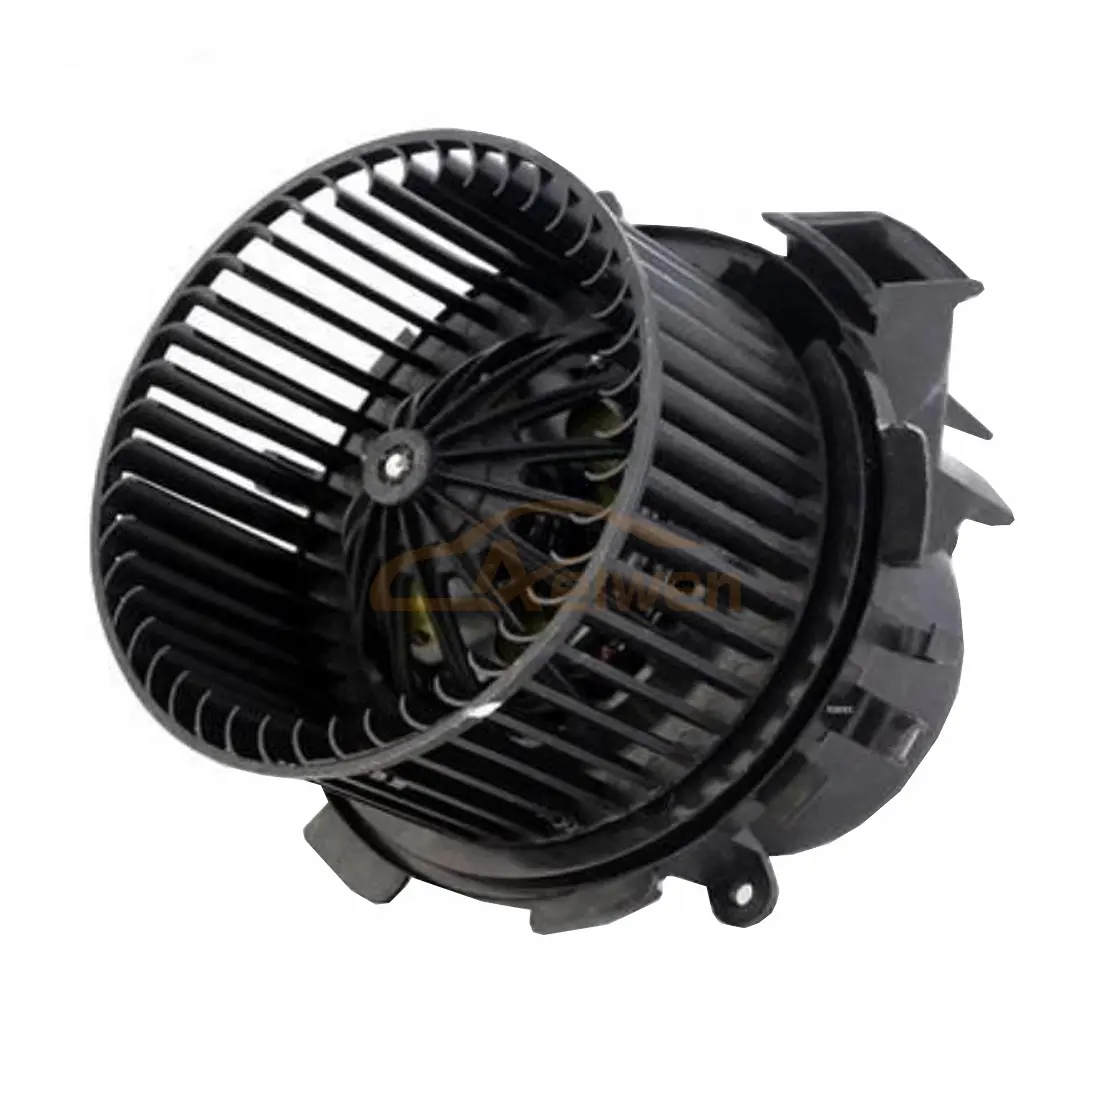 Aelwen-Motor de soplador de calor automático, alta calidad, usado para Opel Movano OE N. ° 7701057555 8EW009158211 4415547